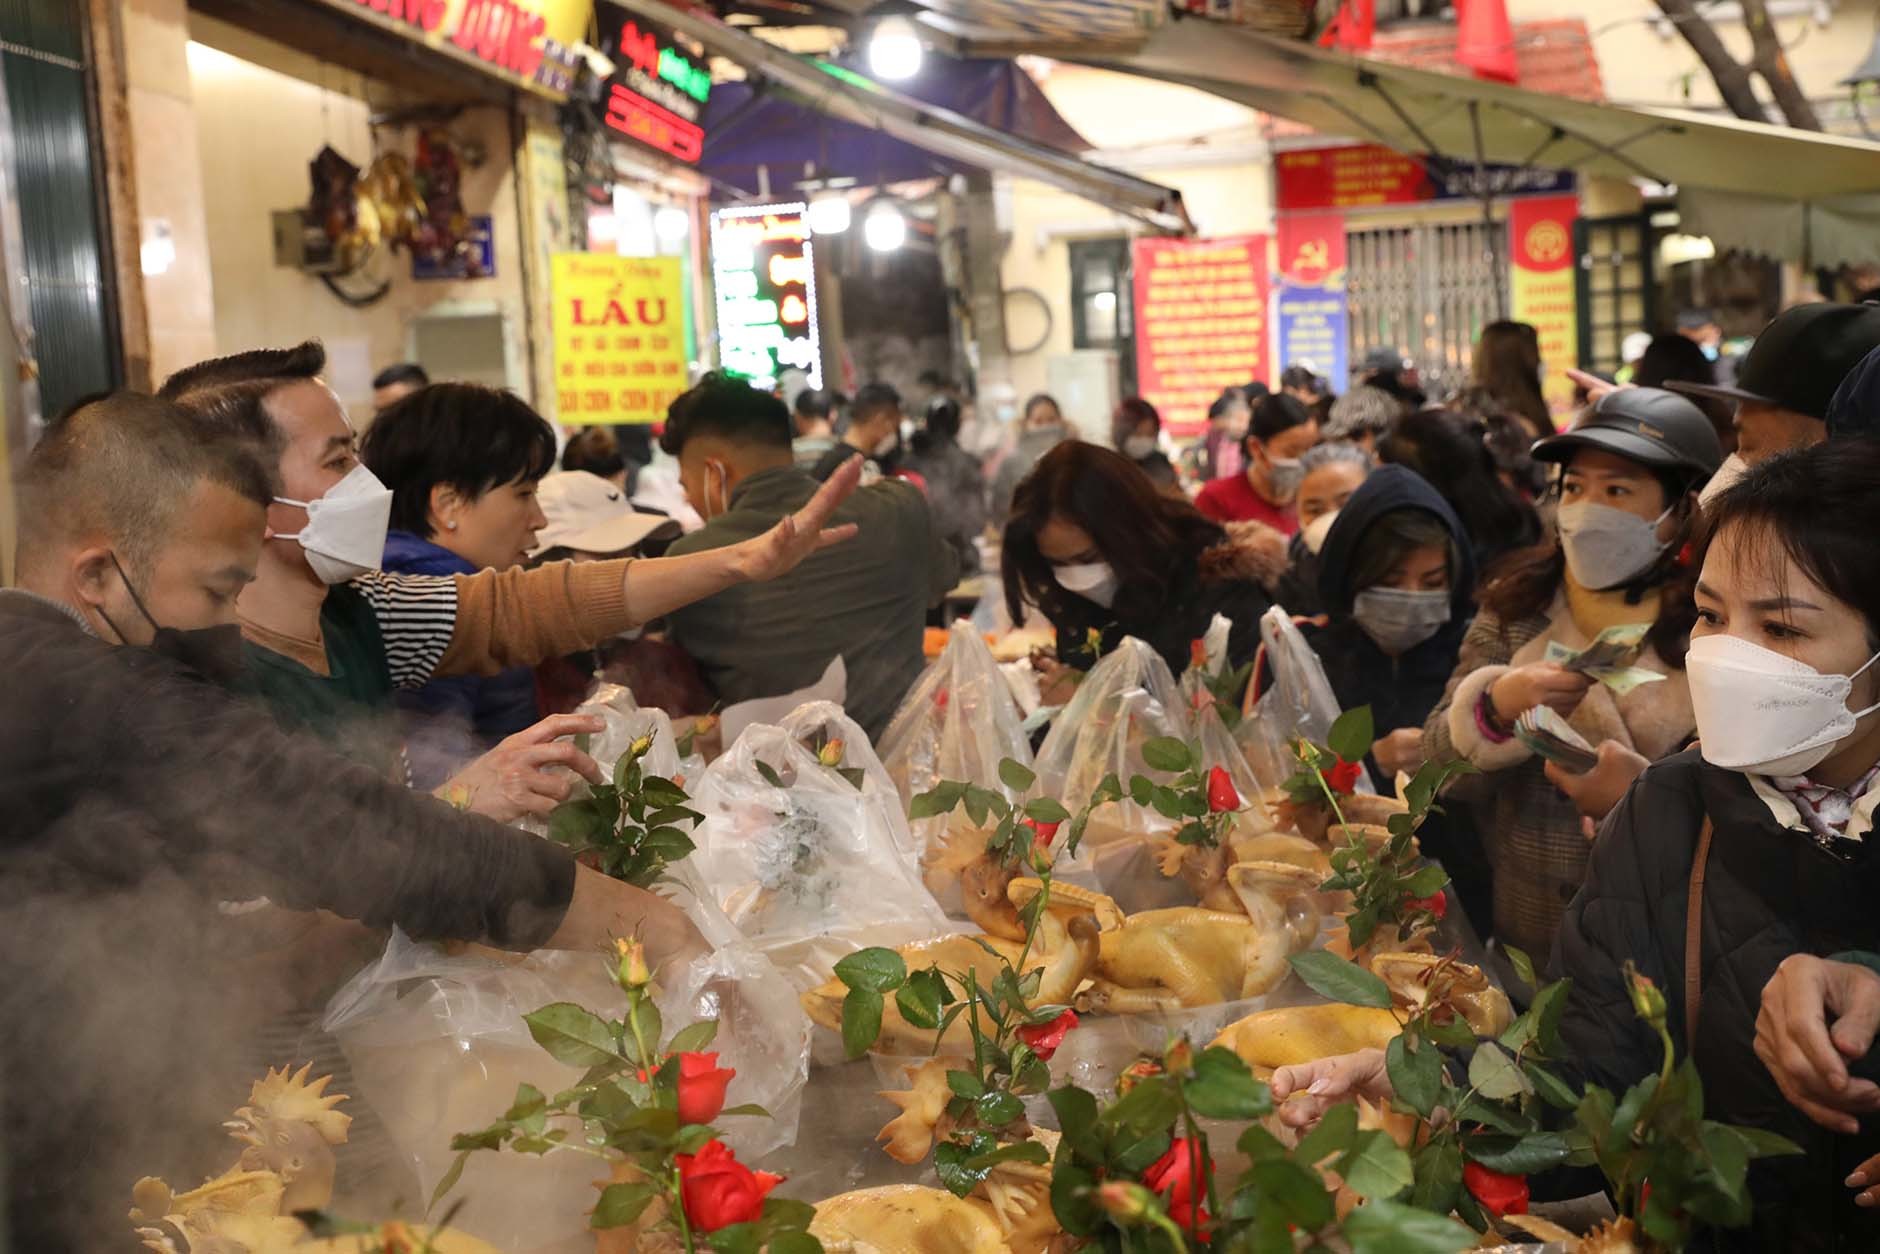 Chen chân mua gà cúng giao thừa tiền triệu ở khu chợ 'nhà giàu' Hà Nội